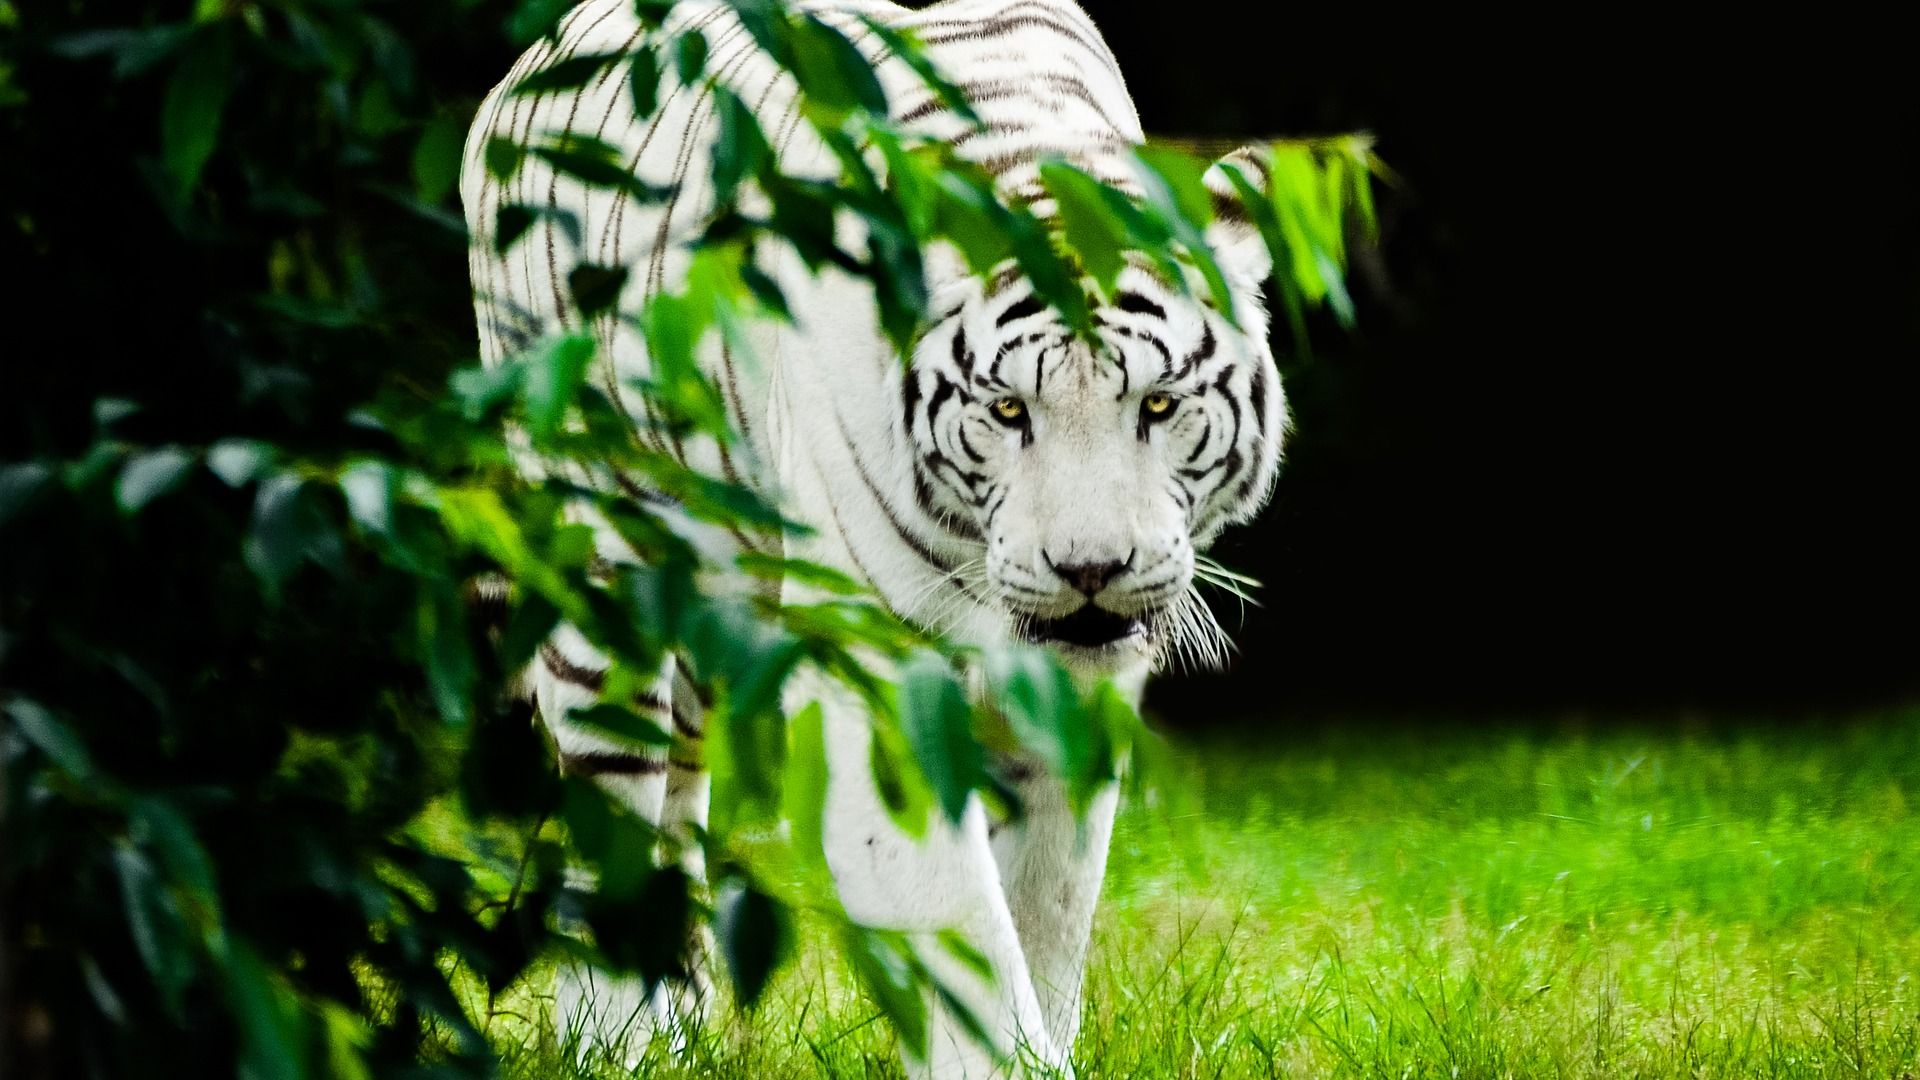 タイガー壁紙,虎,ベンガルトラ,野生動物,緑,ネコ科